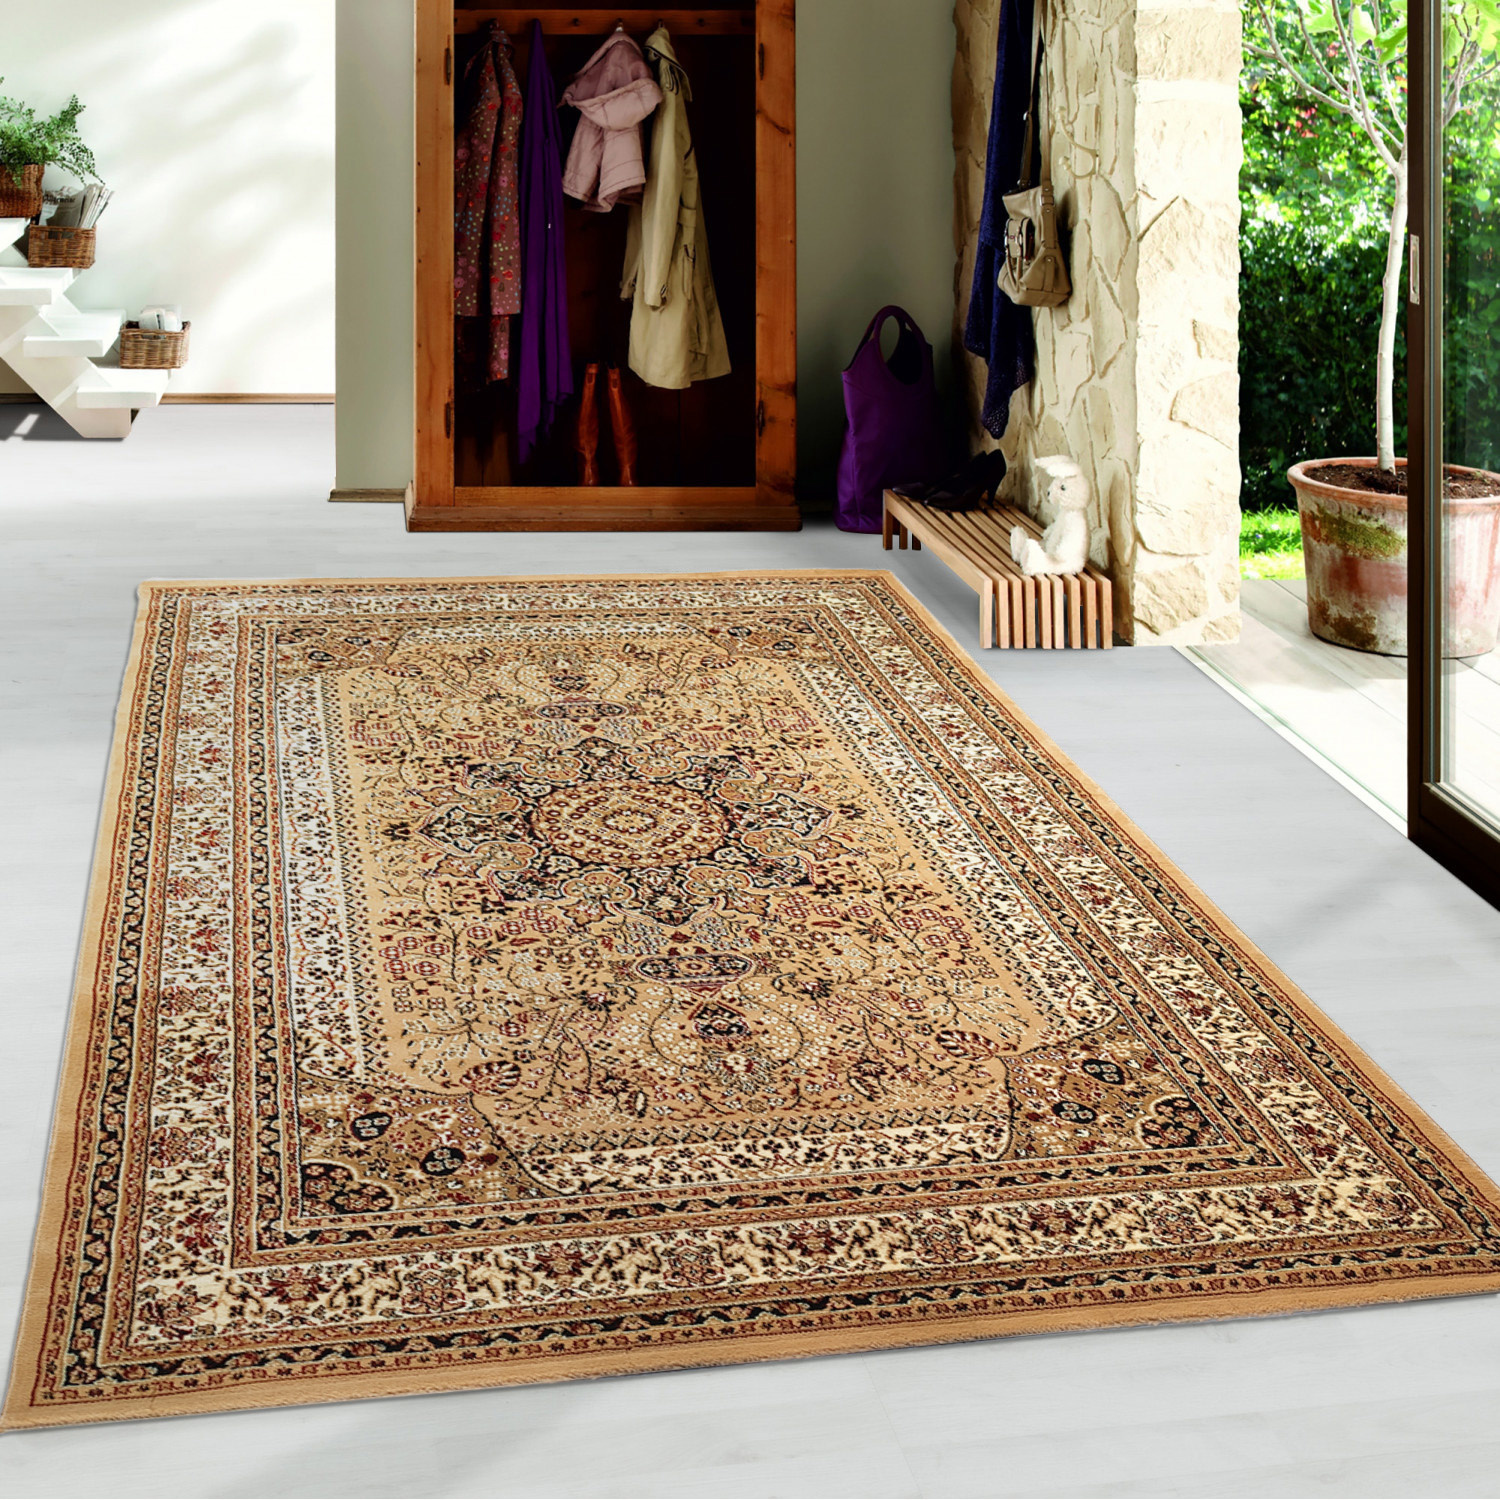 Ben je op zoek naar een Klassiek Beige vloerkleed? Marrakesh collectie uit verschillende dessins en kleuren. - Flycarpets.nl